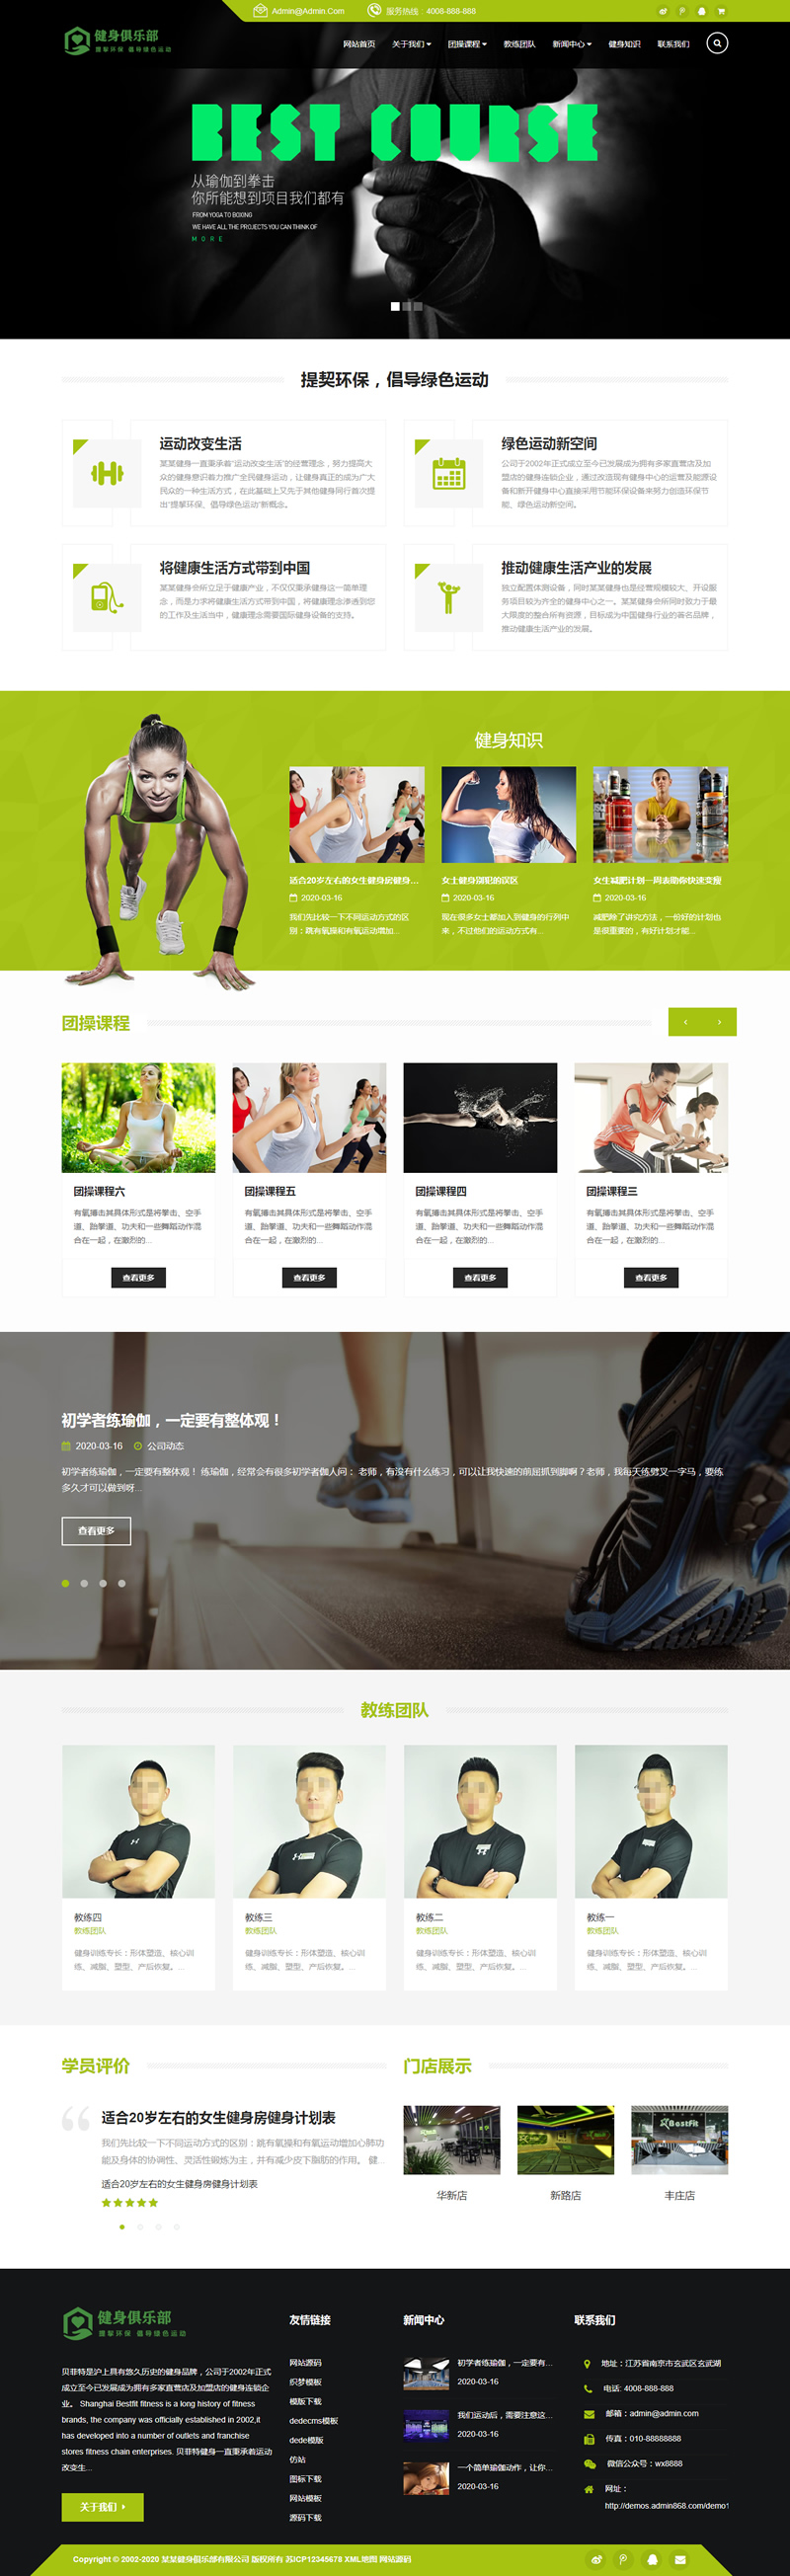 C237 织梦dedecms绿色响应式健身俱乐部企业网站模板(自适应手机移动端)